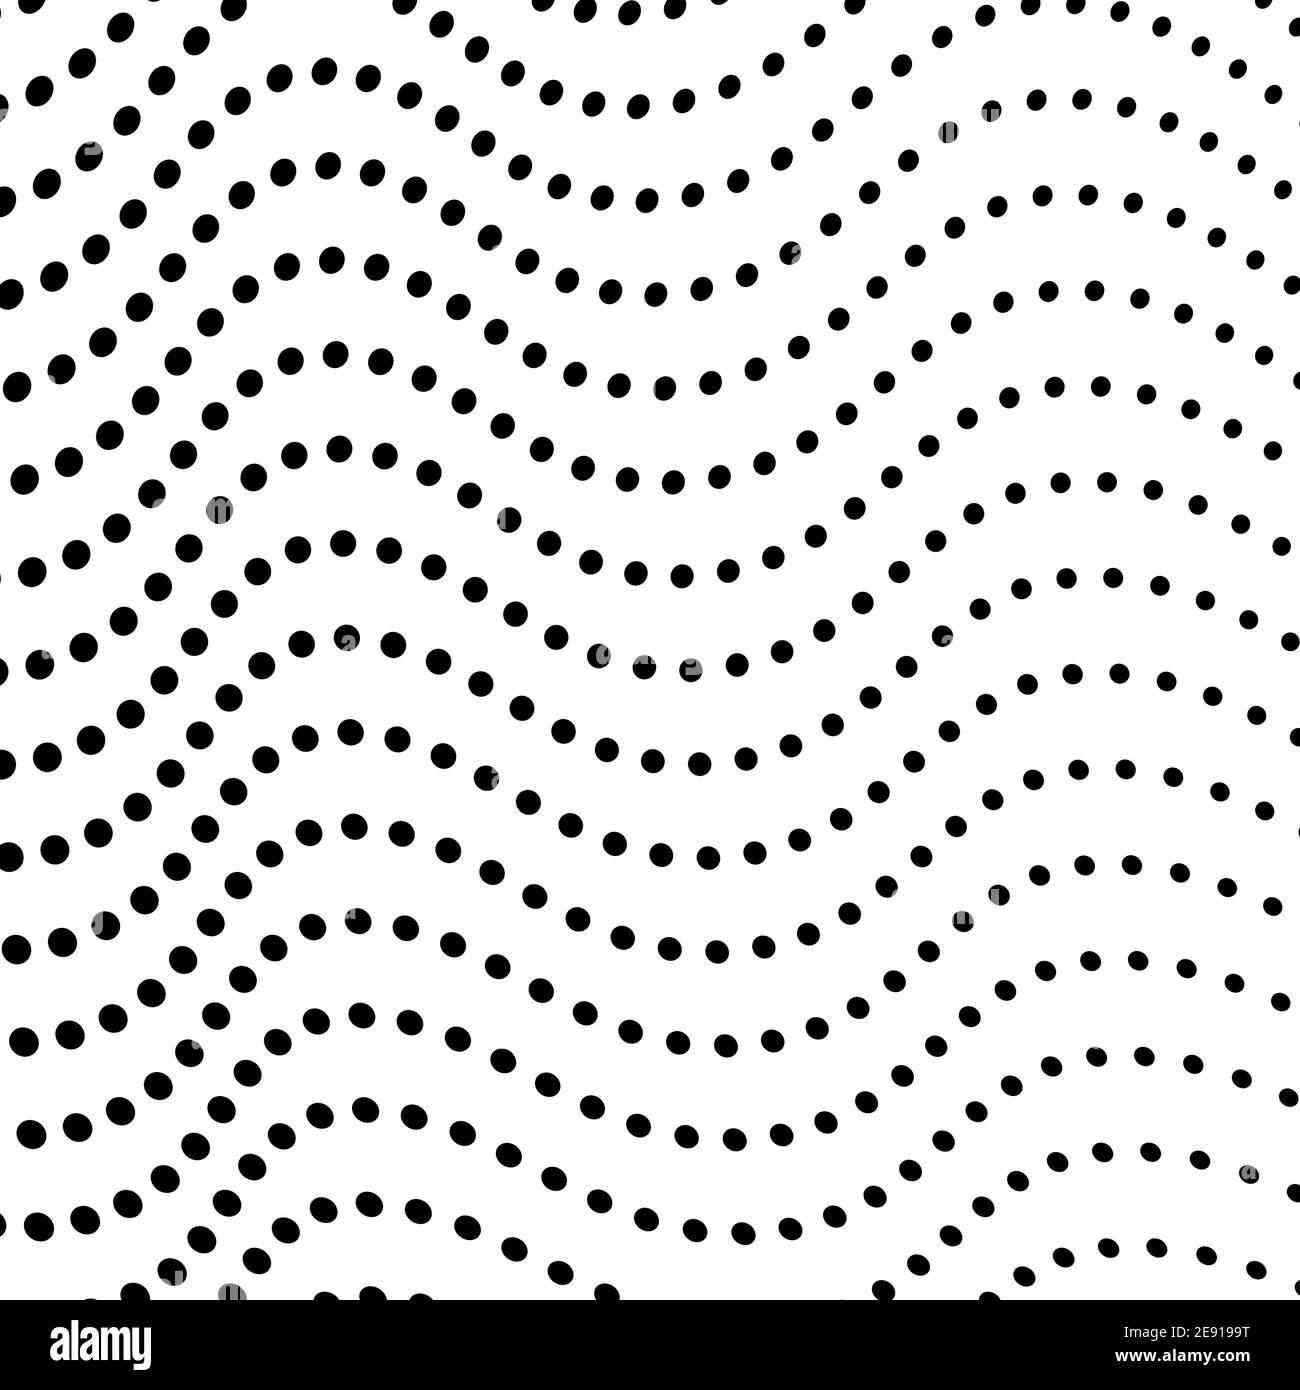 Schwarze Punkte, weißer Hintergrund. Gefleckte Wellenlinien, Kurven. Monochromes op Art Design. Vektorwellen. Abstraktes Halbtonmuster, Internetkonzept. EPS10 Stock Vektor